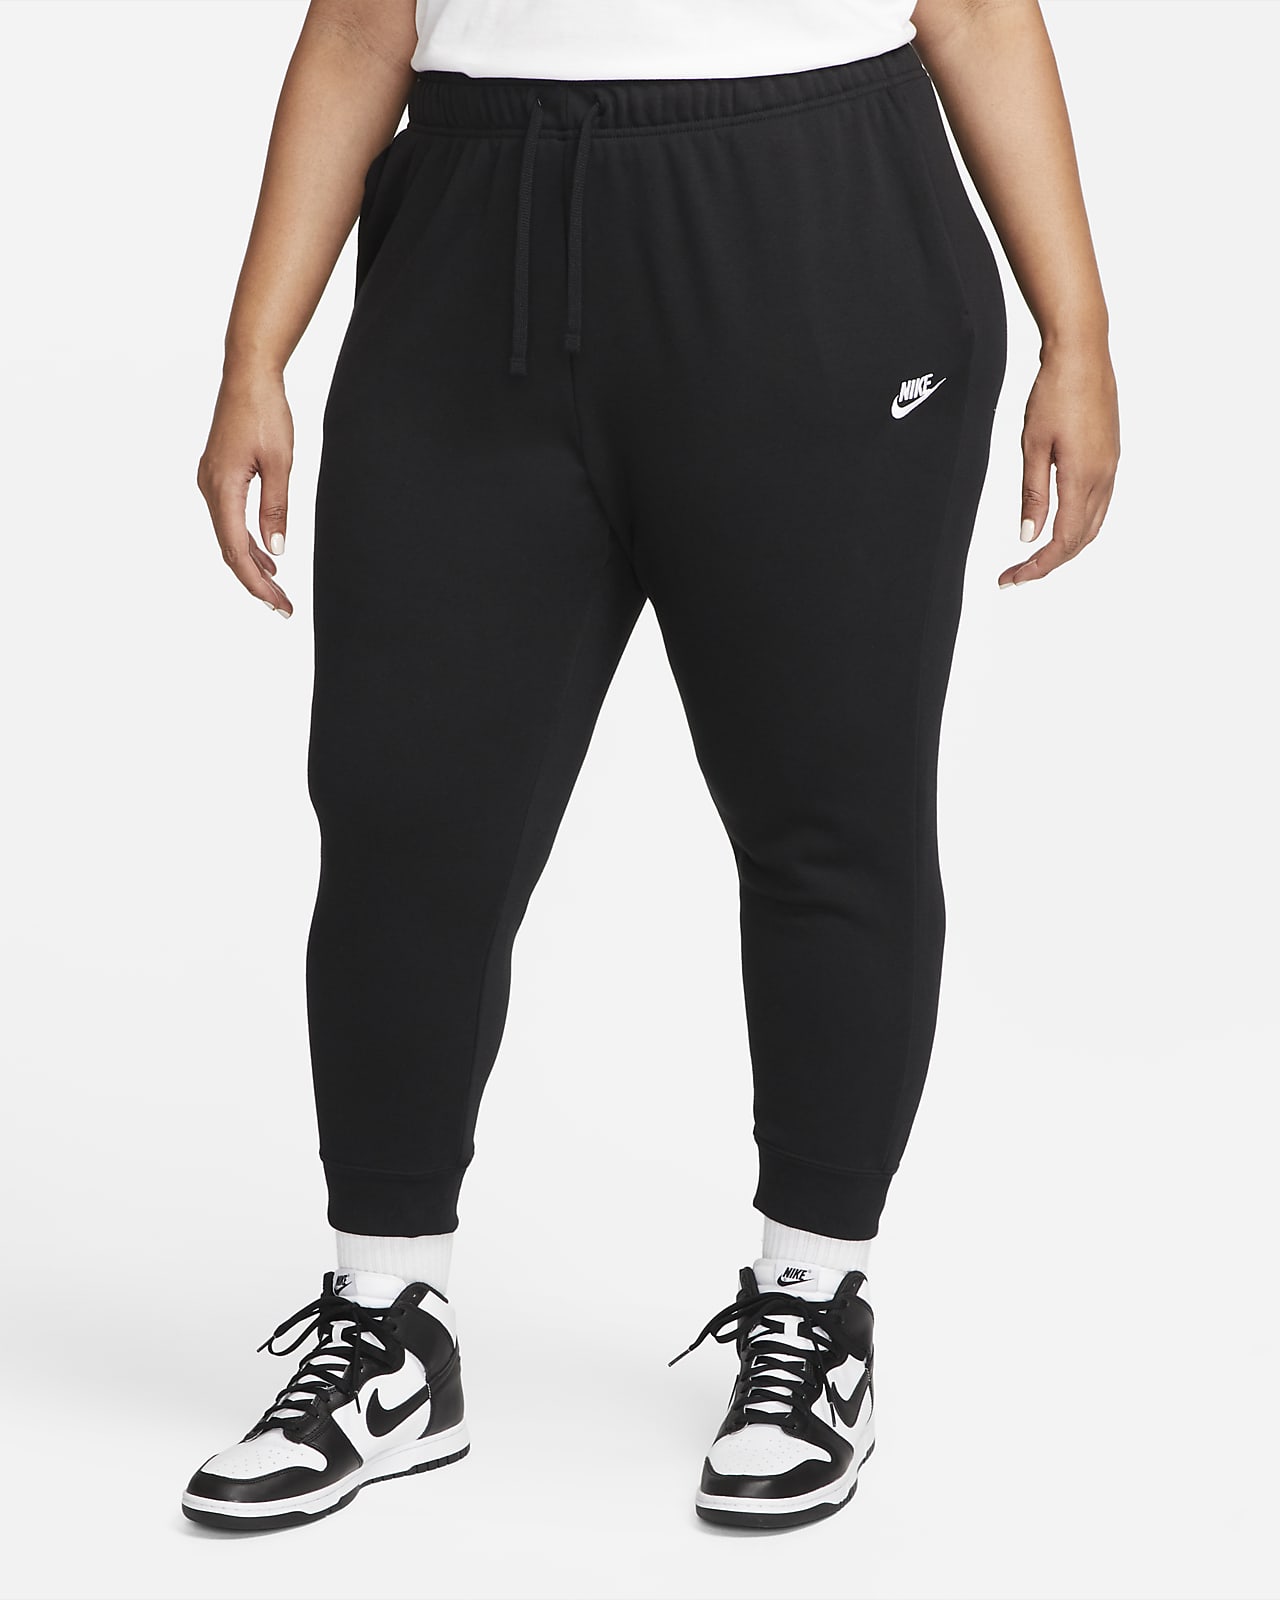 Pantalon de jogging taille mi-haute Nike Sportswear Club Fleece pour Femme (grande taille)